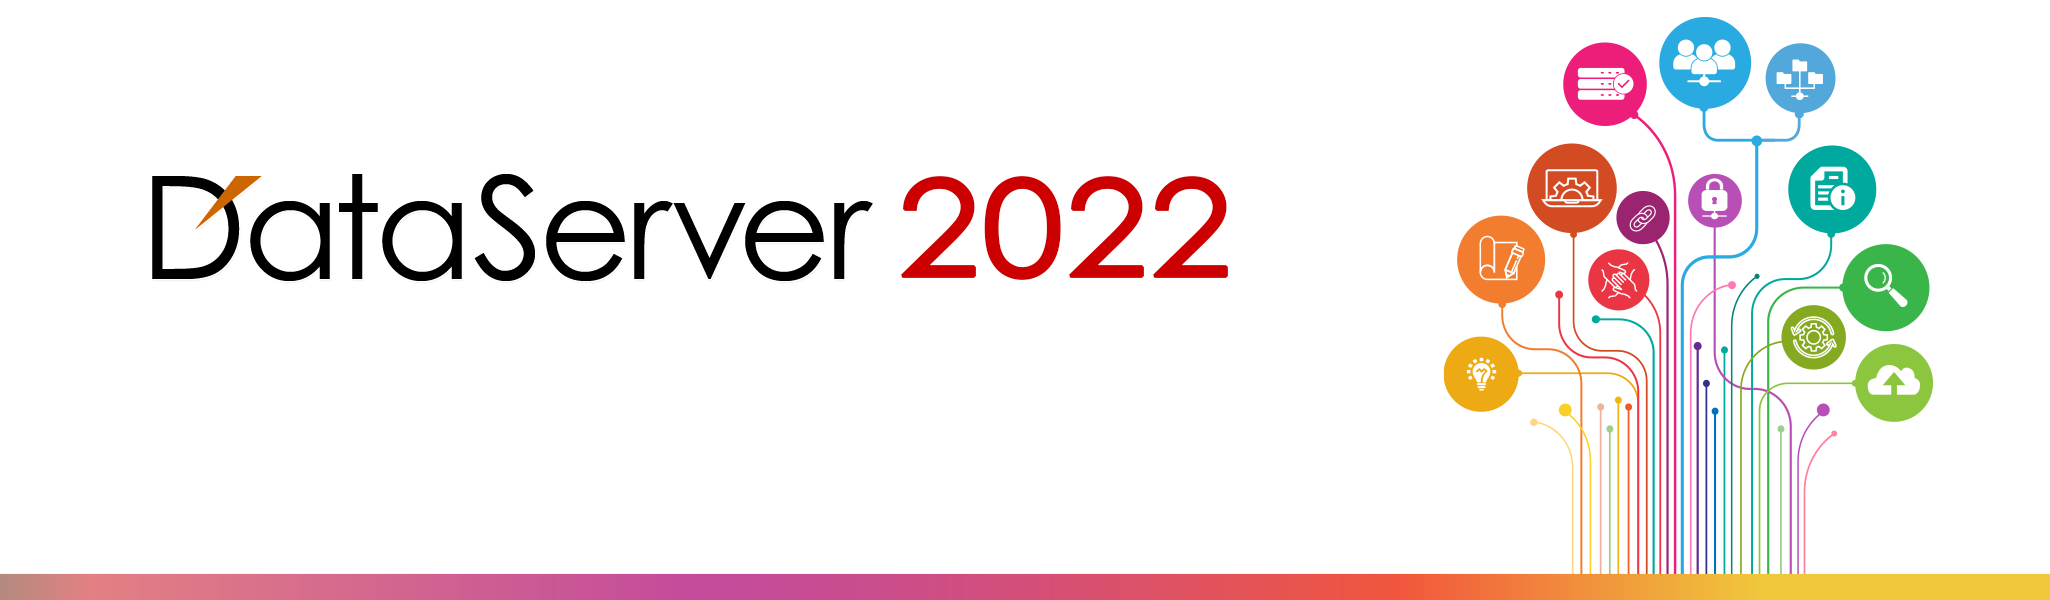 イメージ:DataServer 2022